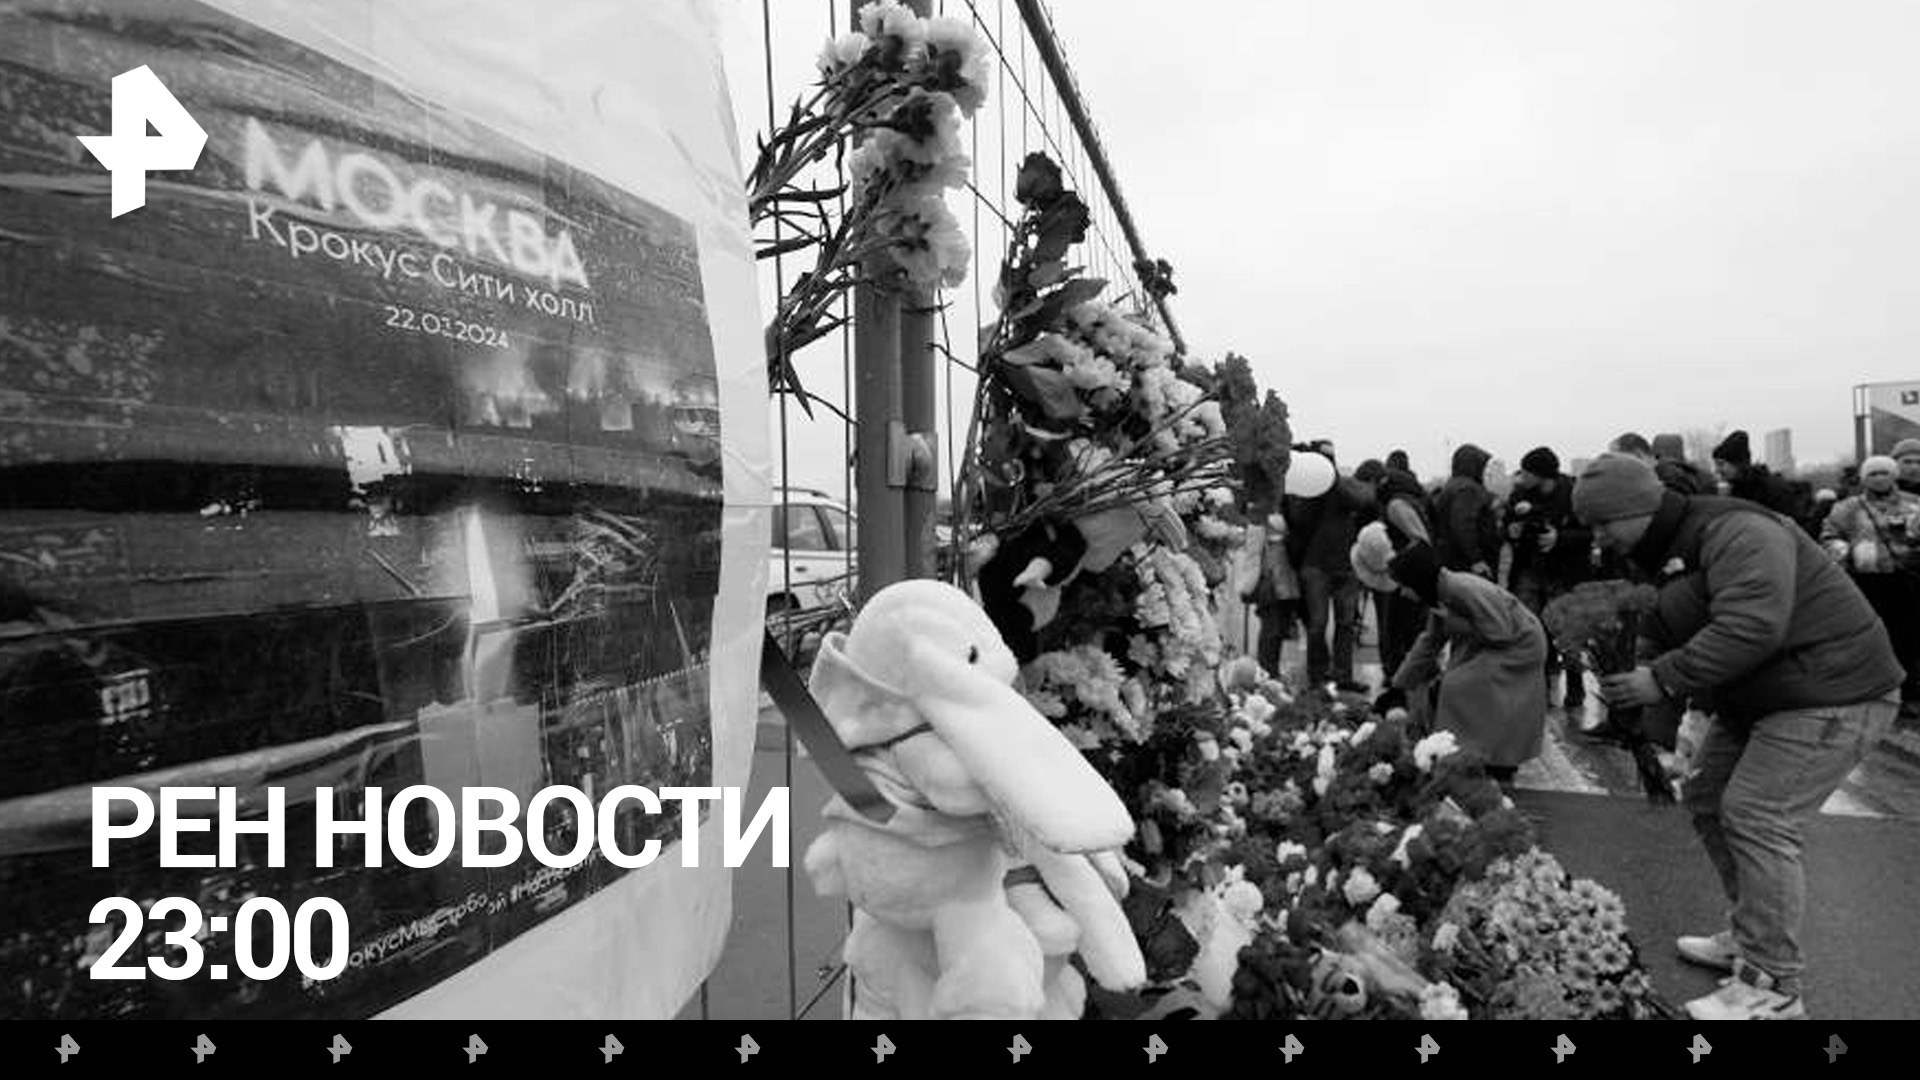 Подозреваемые в теракте — на допросе в СК / Стихийный мемориал у "Крокуса" /РЕН Новости 23.03, 23:00